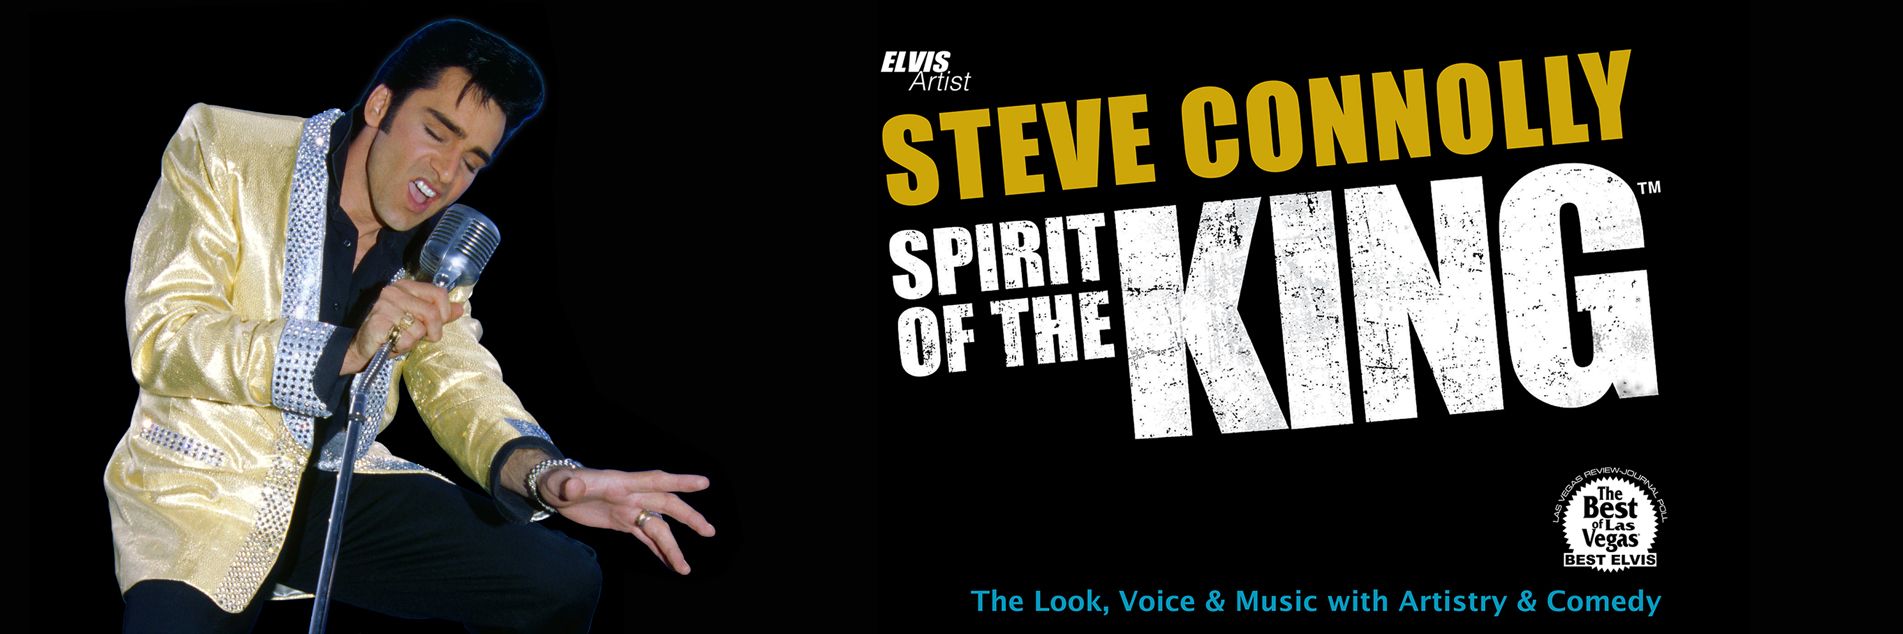 Steve Connolly Spirit Of The King